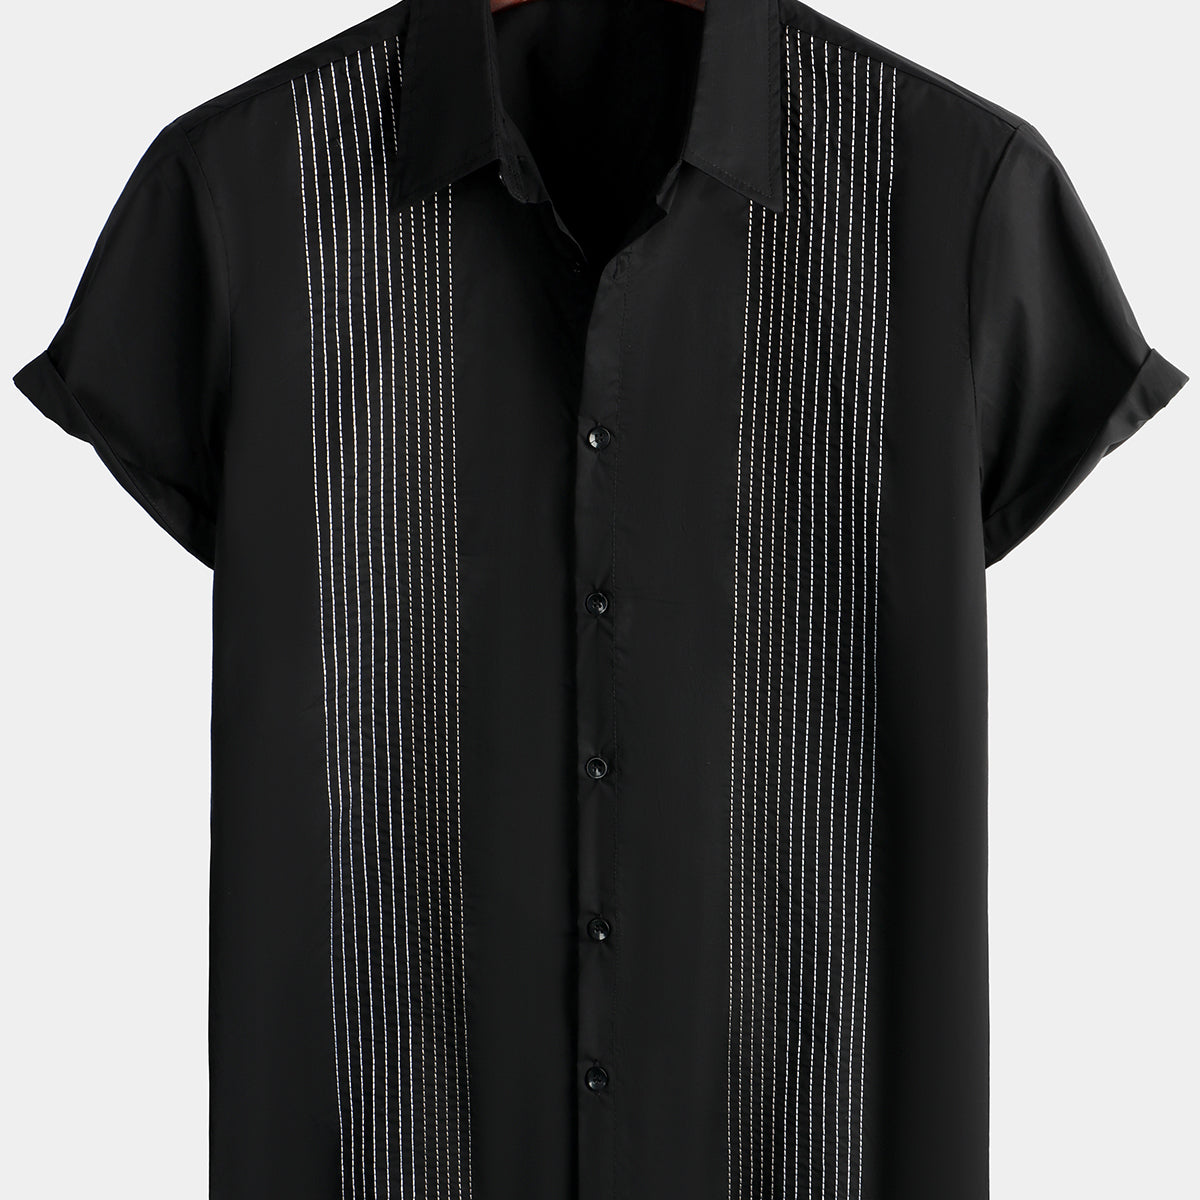 Men's Hawaiian Cotton Linen Striped Short Sleeve Button Up Summer Beach Embroidered Shirt